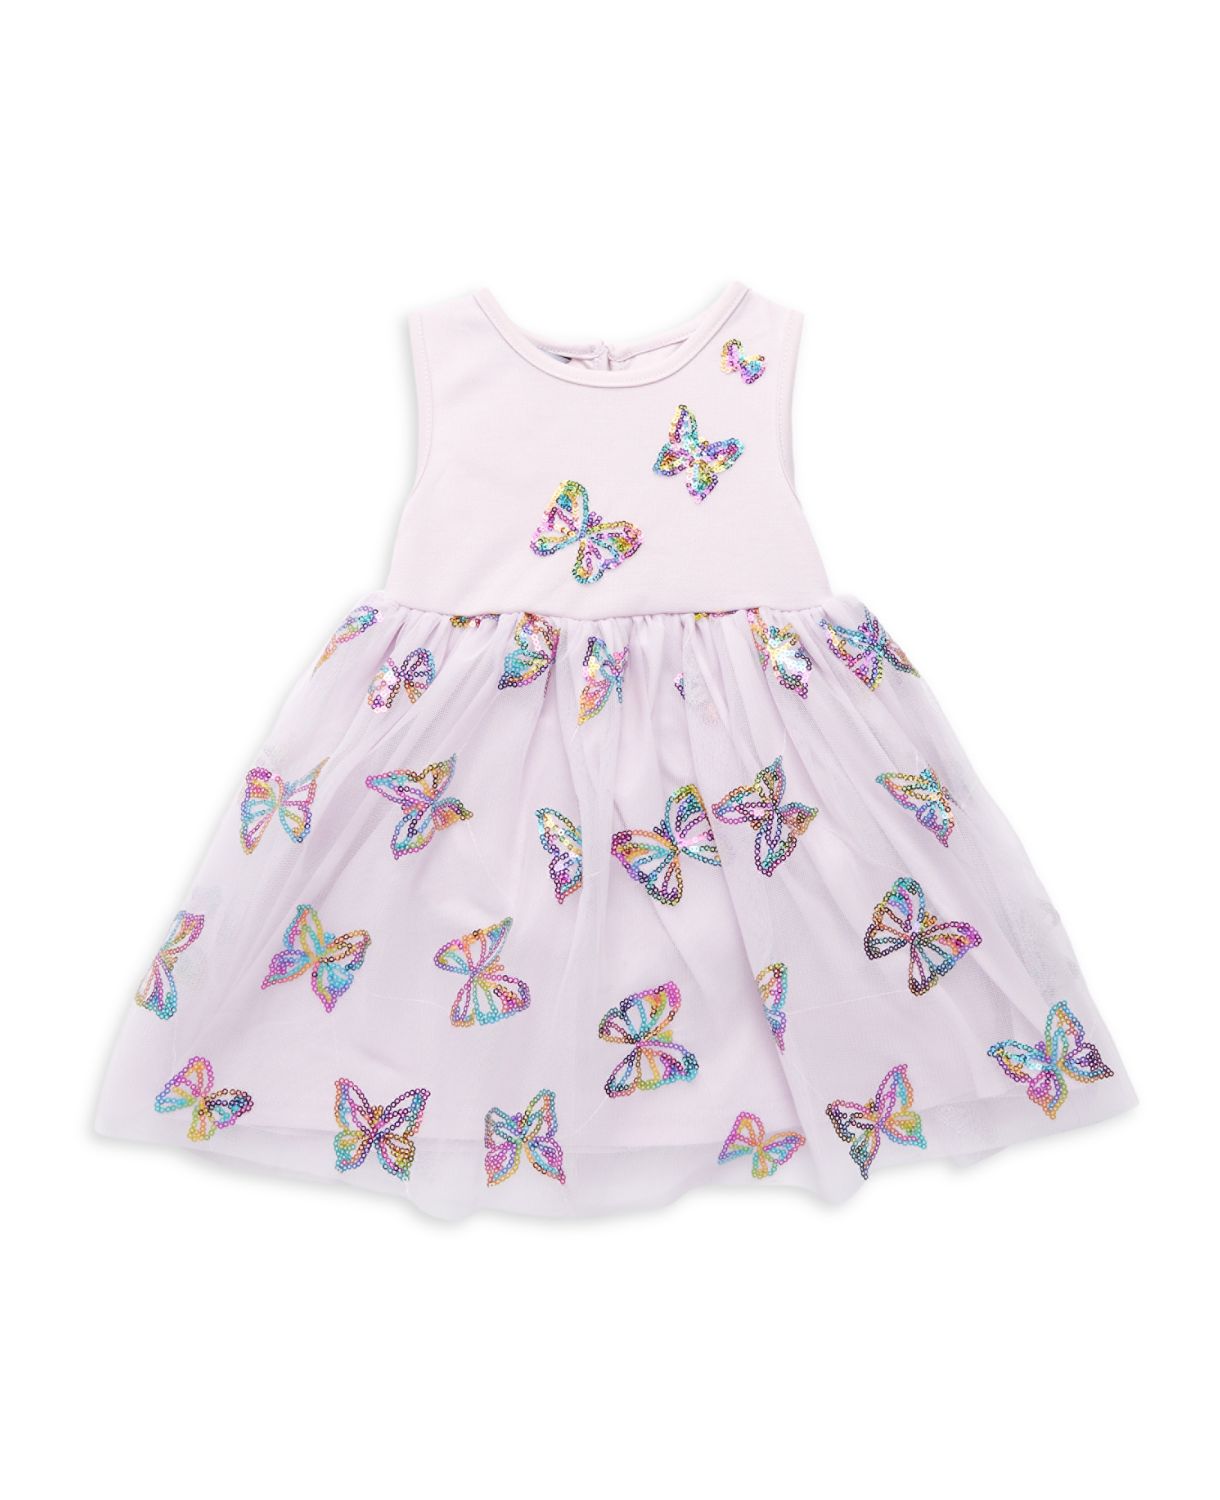 Двухсекционное платье с радужными пайетками и бабочками для маленьких девочек Комплект шароваров Pippa & Julie